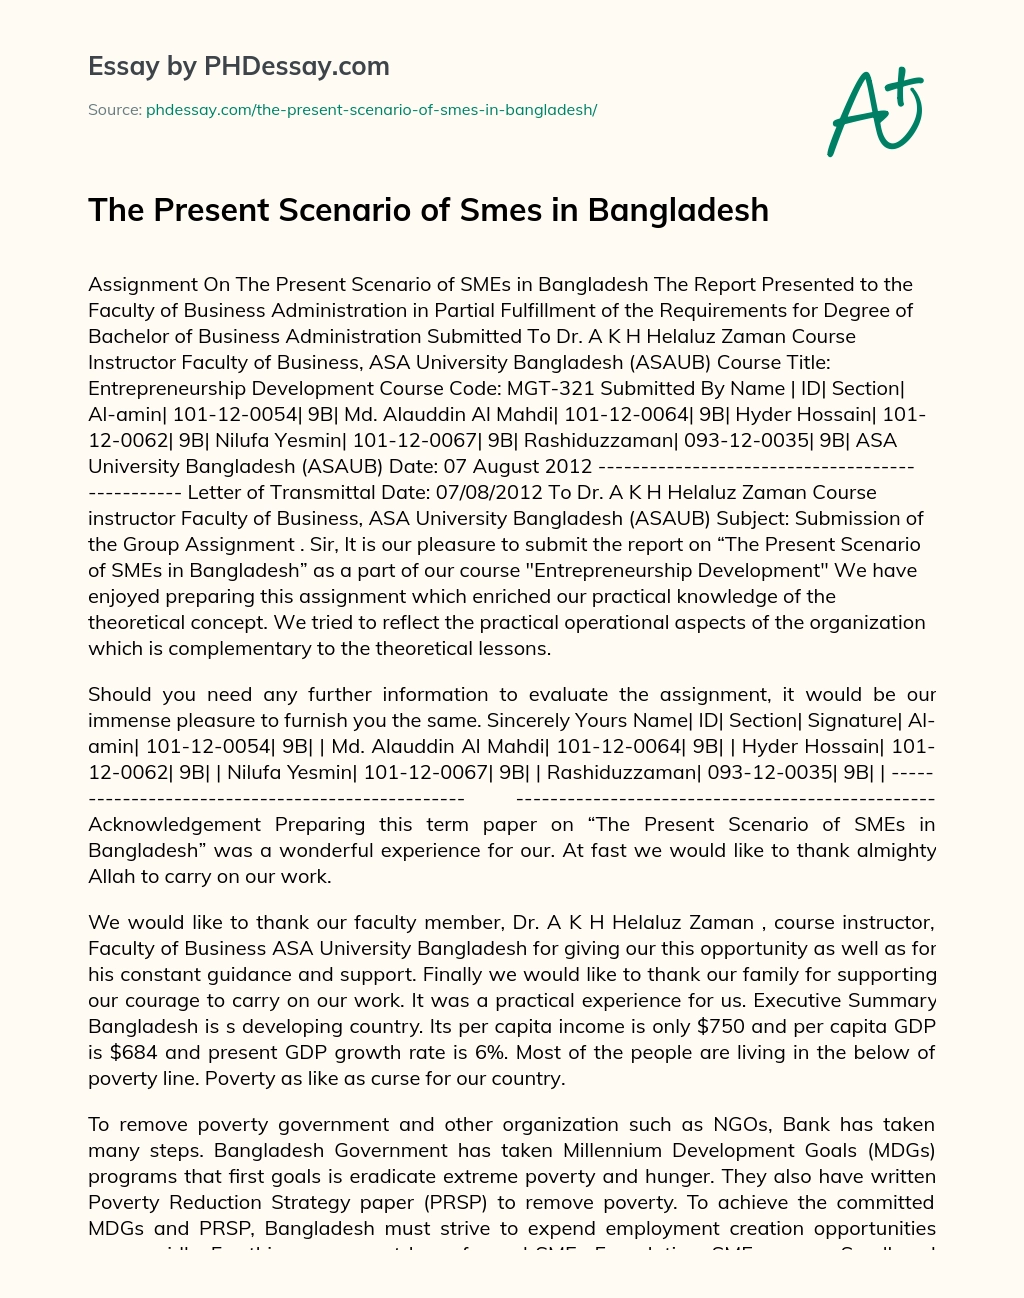 The Present Scenario of Smes in Bangladesh essay